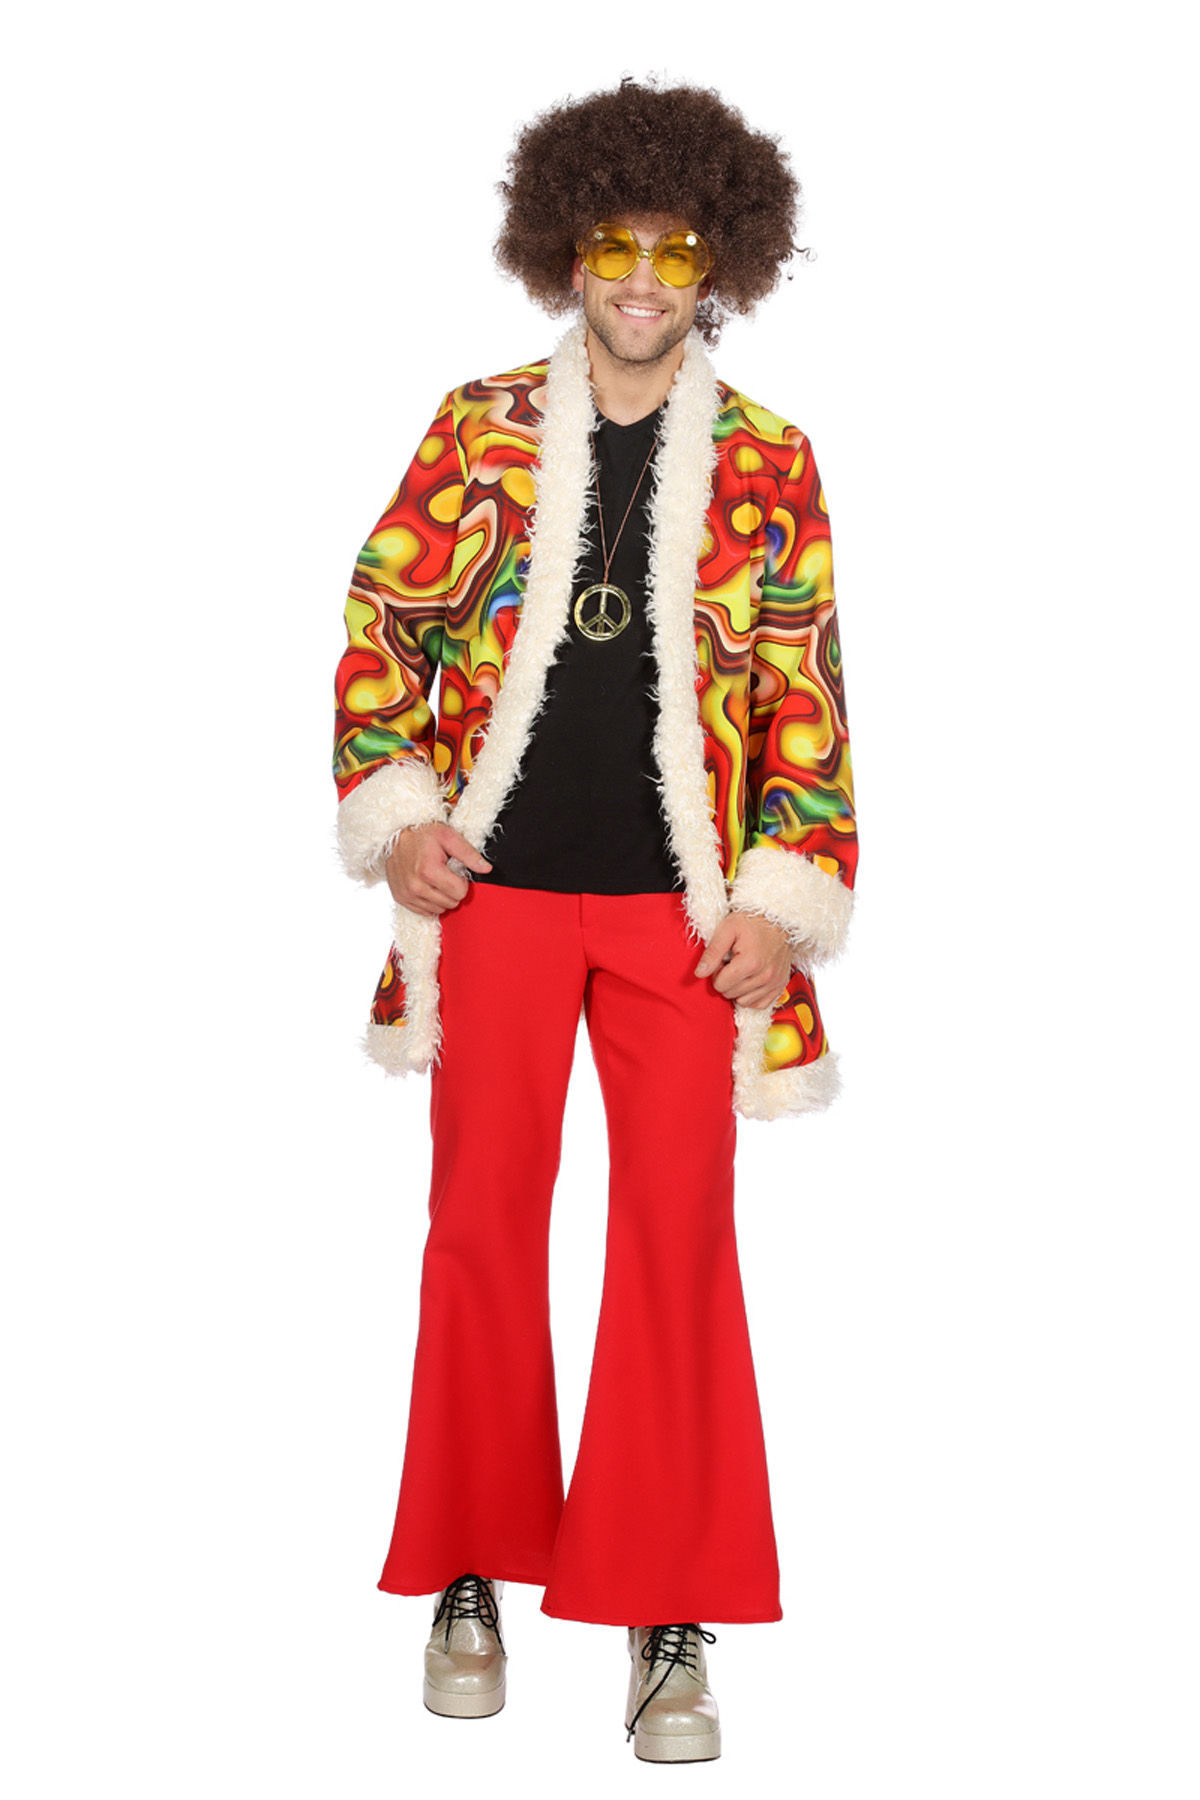 Hippieman Jimmy - Willaert, verkleedkledij, carnavalkledij, carnavaloutfit, feestkledij, flower power, hippie, jaren 60, sixties